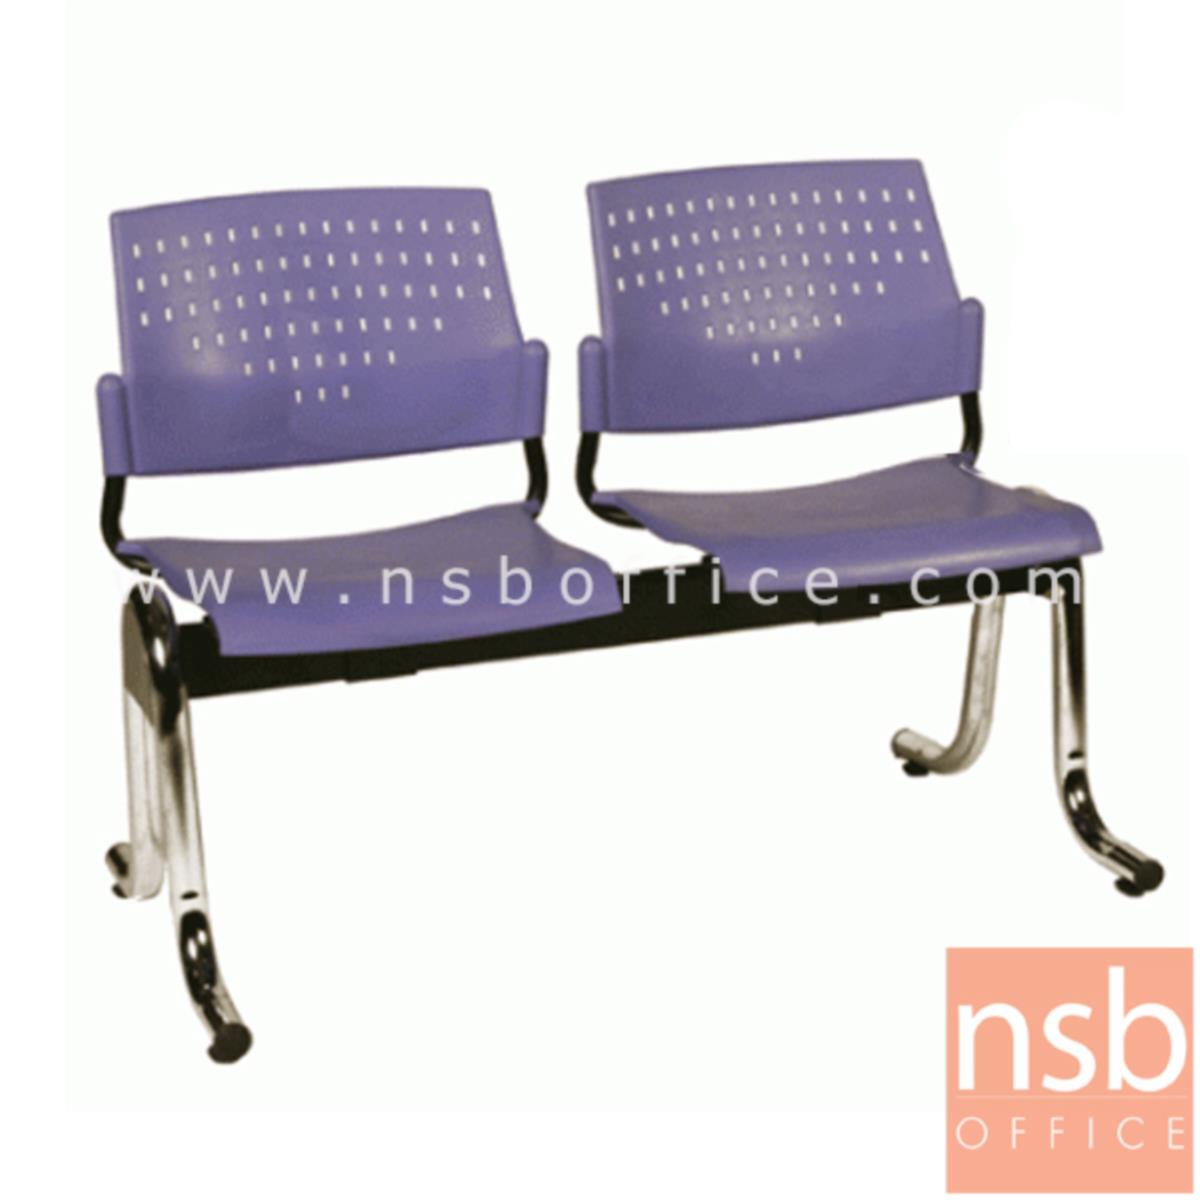 เก้าอี้นั่งคอยเฟรมโพลี่ รุ่น B026 2 ,3 ,4 ที่นั่ง ขนาด 104W ,162W ,213W cm. ขาเหล็ก